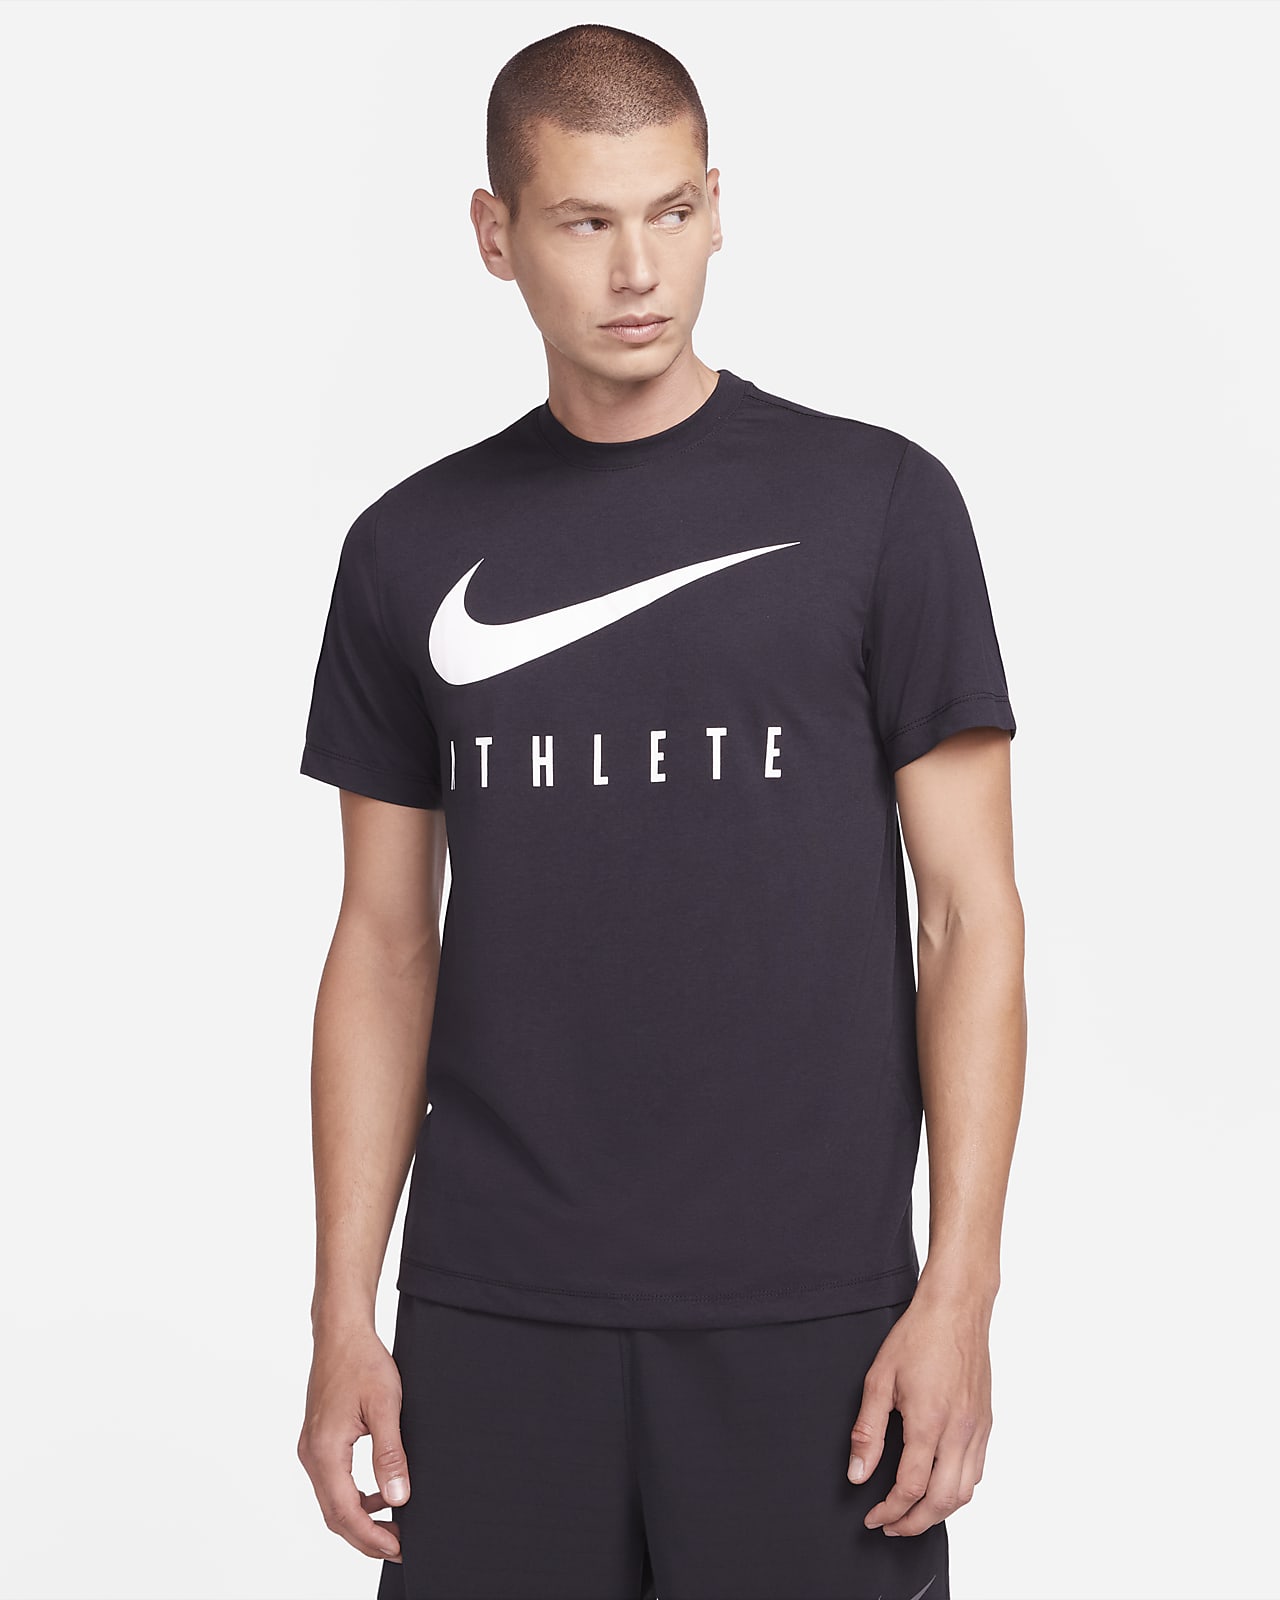 Vervagen veronderstellen Vaderlijk Nike Dri-FIT Men's Training T-Shirt. Nike LU